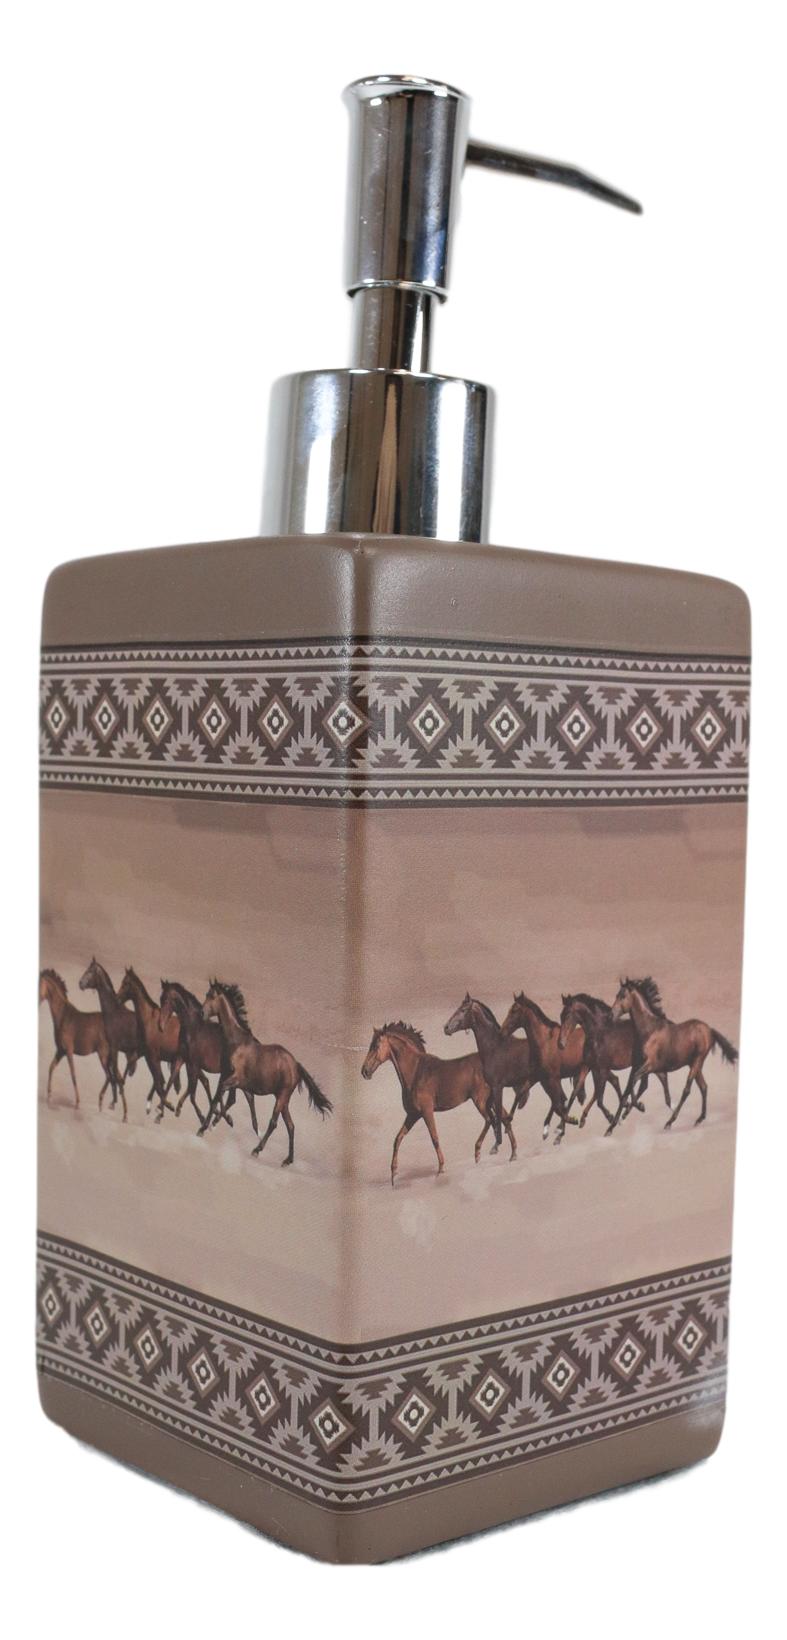 Ebros Western Running Horses With Southwest Navajo Vectors Liquid Soap Pump Dispenser